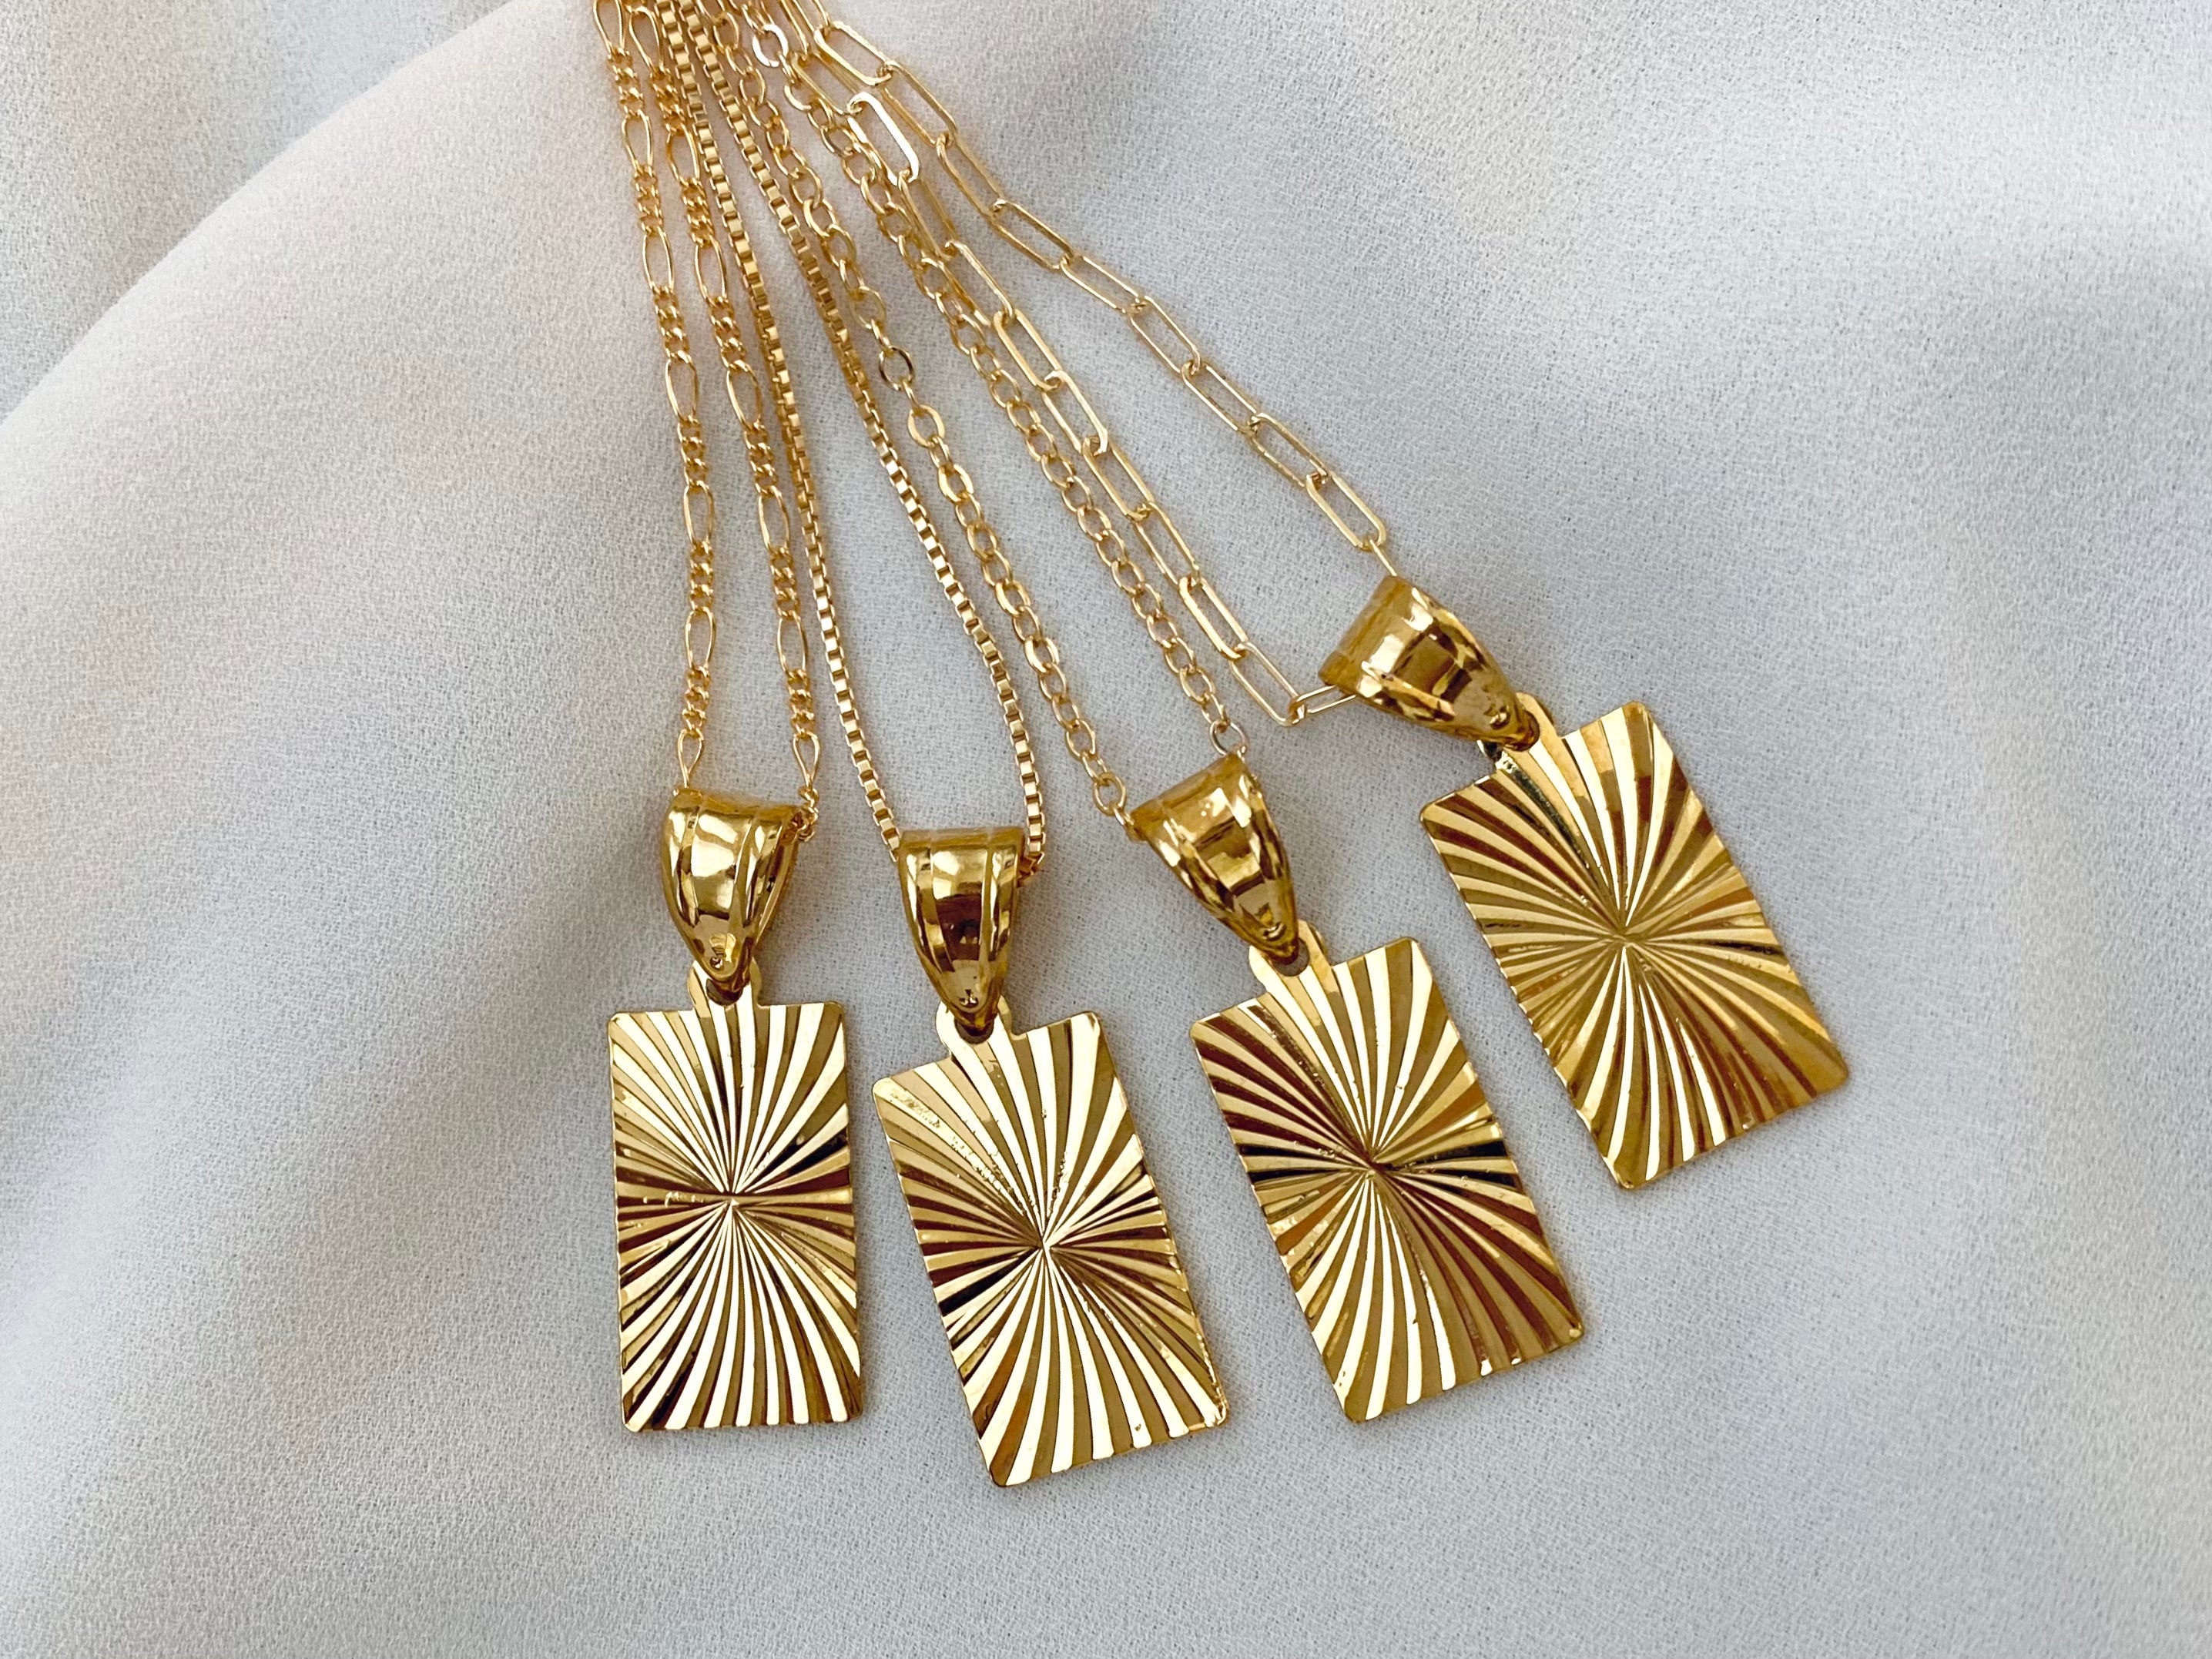 Gold Filled Starburst Rectangle Medallion Necklace - Sunburst